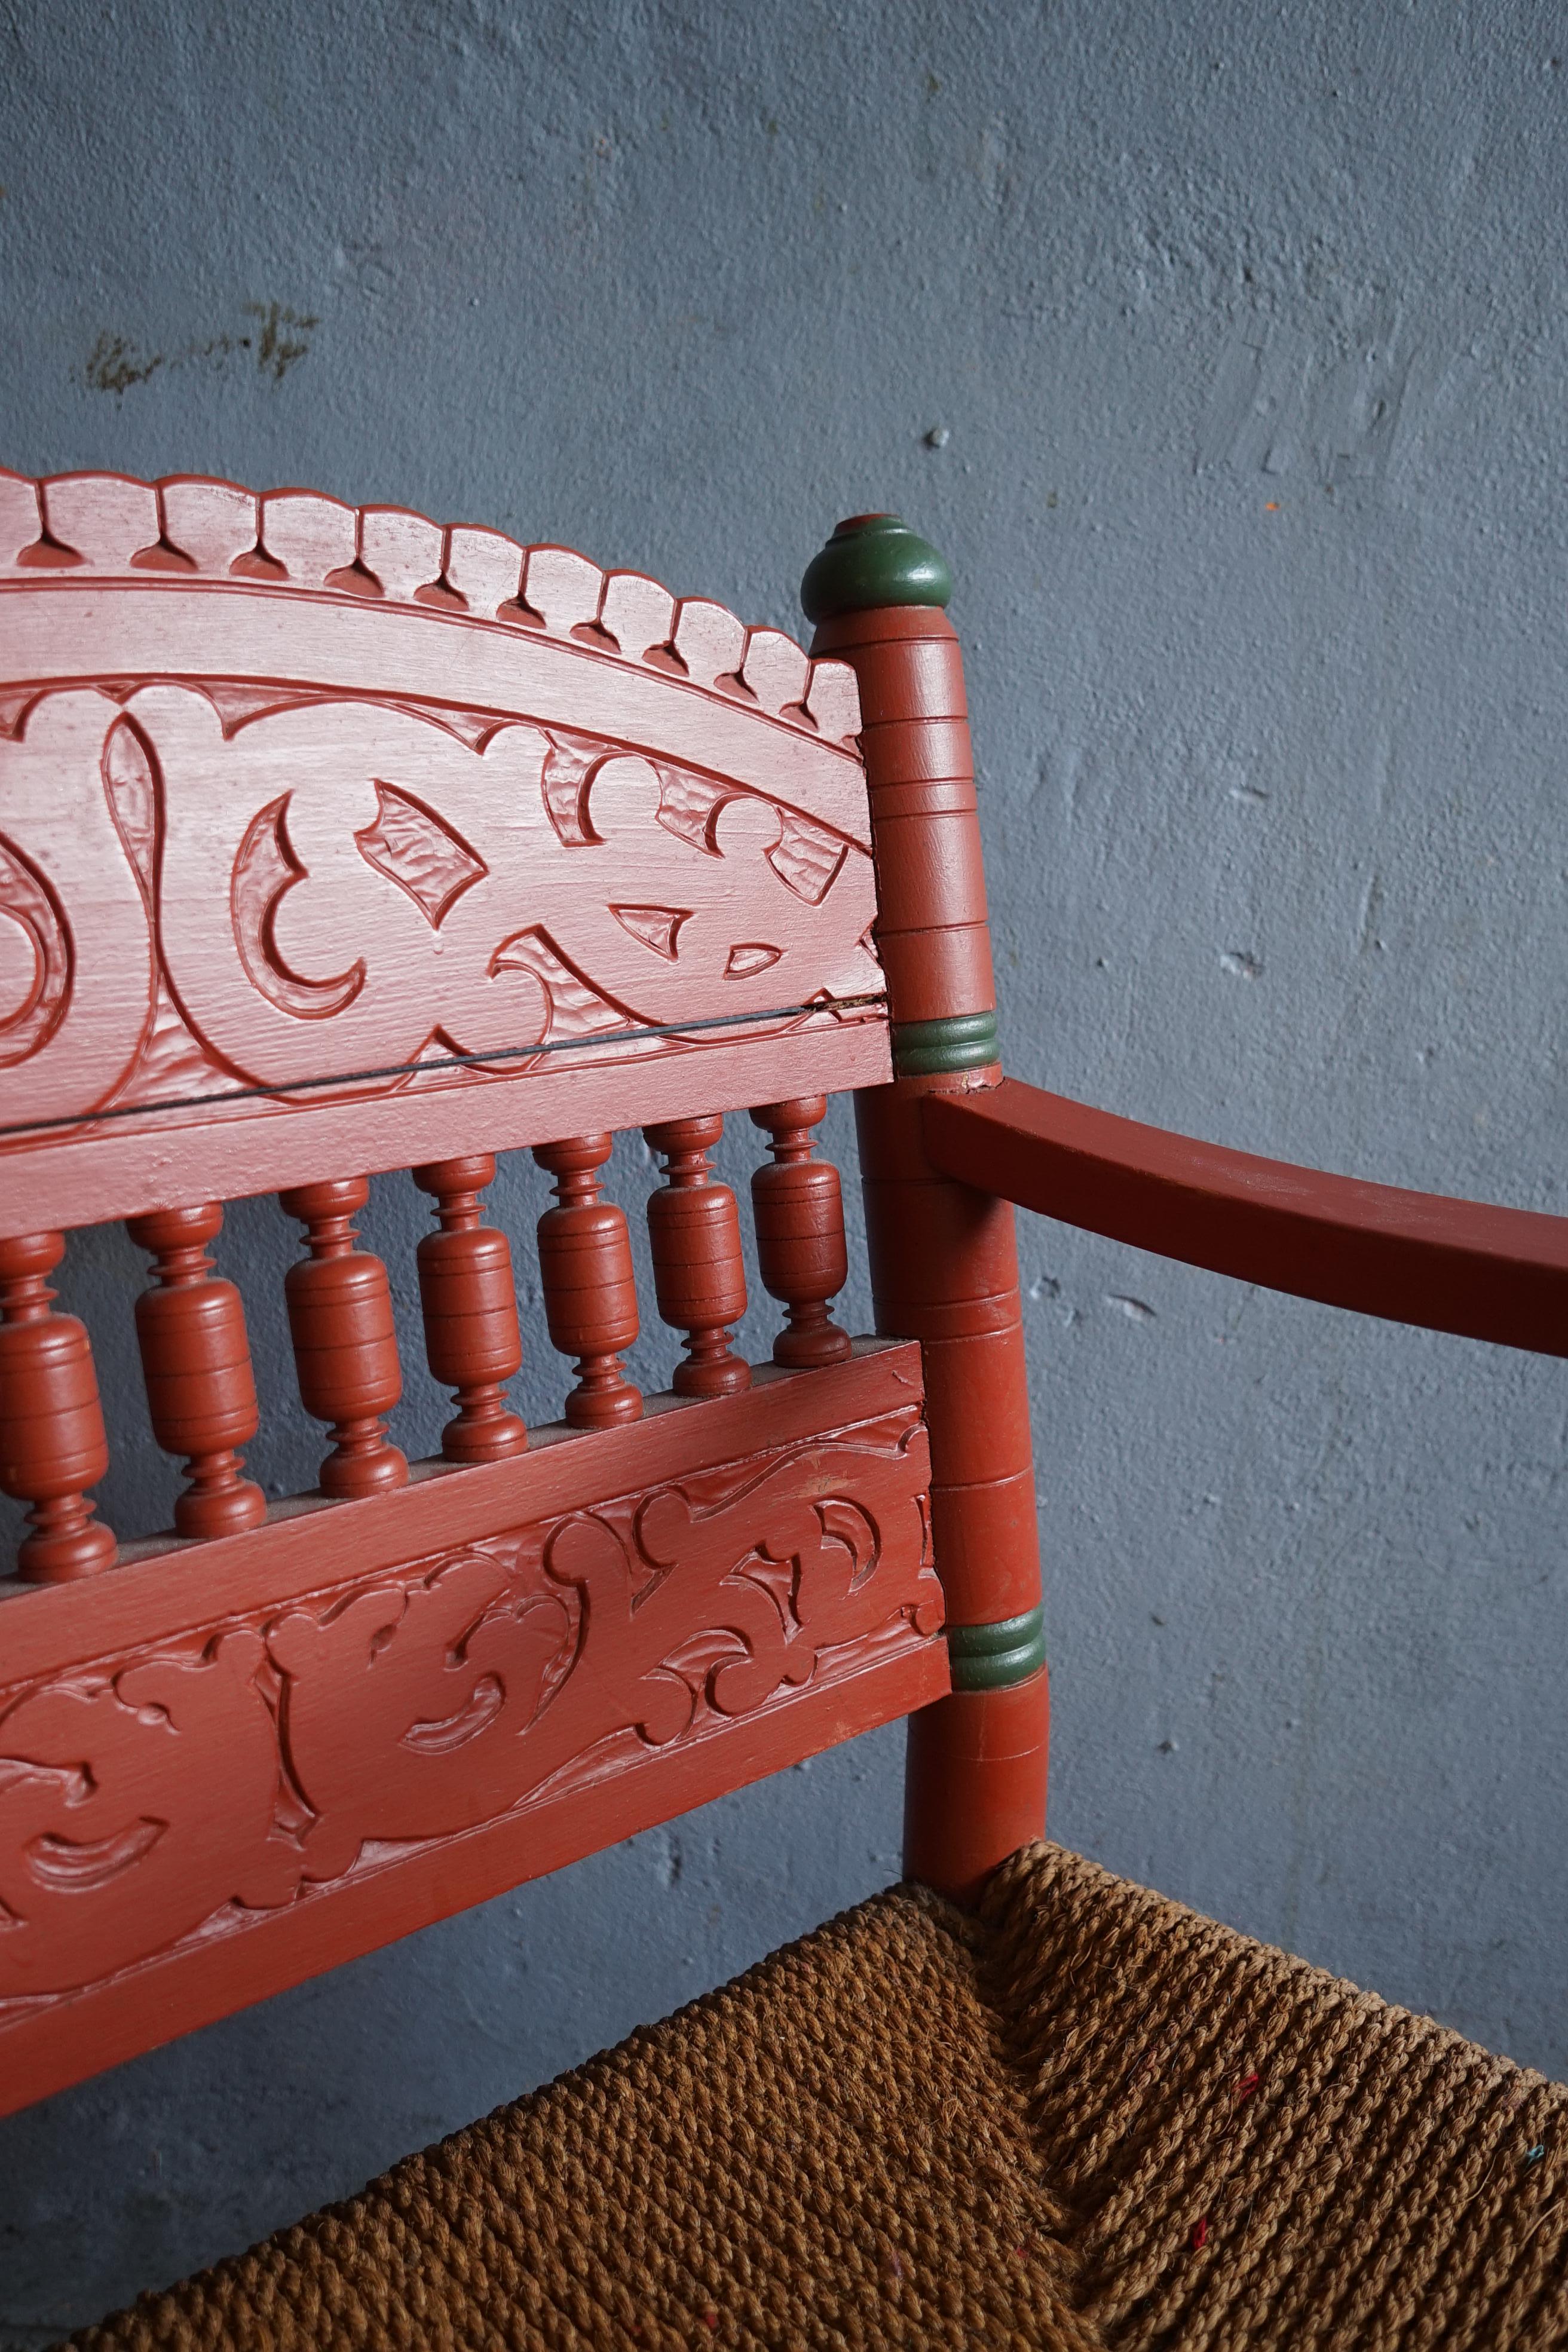 Chaise décorative d'art populaire norvégien rare avec le bois peint rouge et vert d'origine et la sangle d'herbe de mer d'origine des années 1850.

La chaise est fabriquée en bois massif par un artisan qualifié et présente une magnifique sculpture